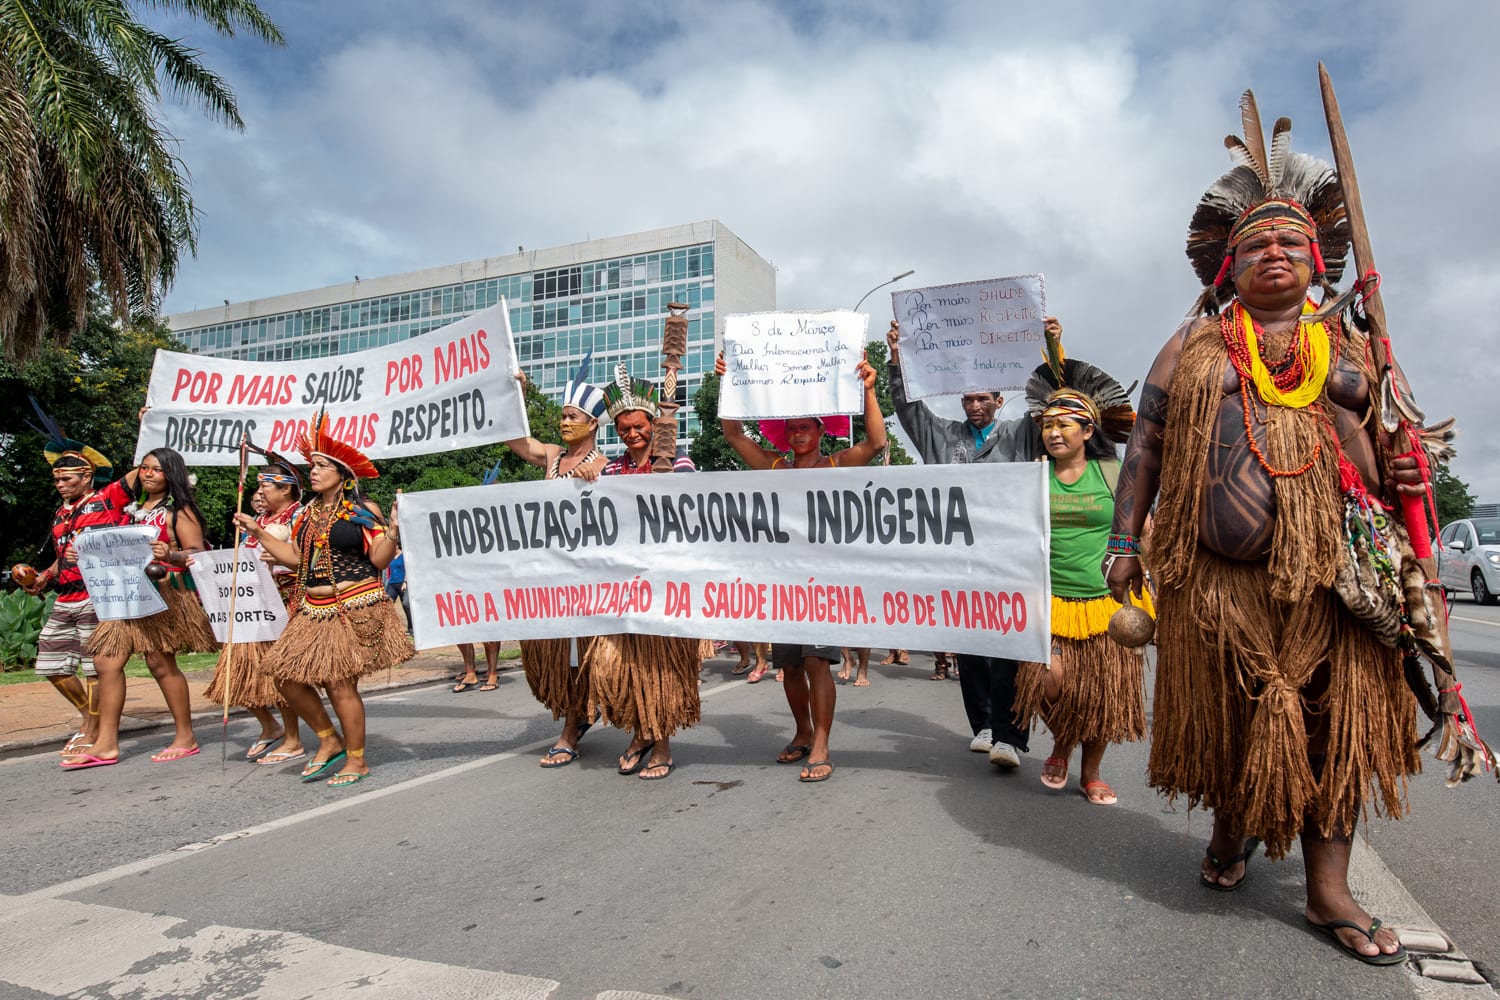 Mobilização dos povos Pataxó, Tupinambá e Pataxó Hã-Hã-Hãe contra a municipalização da saúde indígena, em Brasília. Foto: Tiago Miotto/Cimi